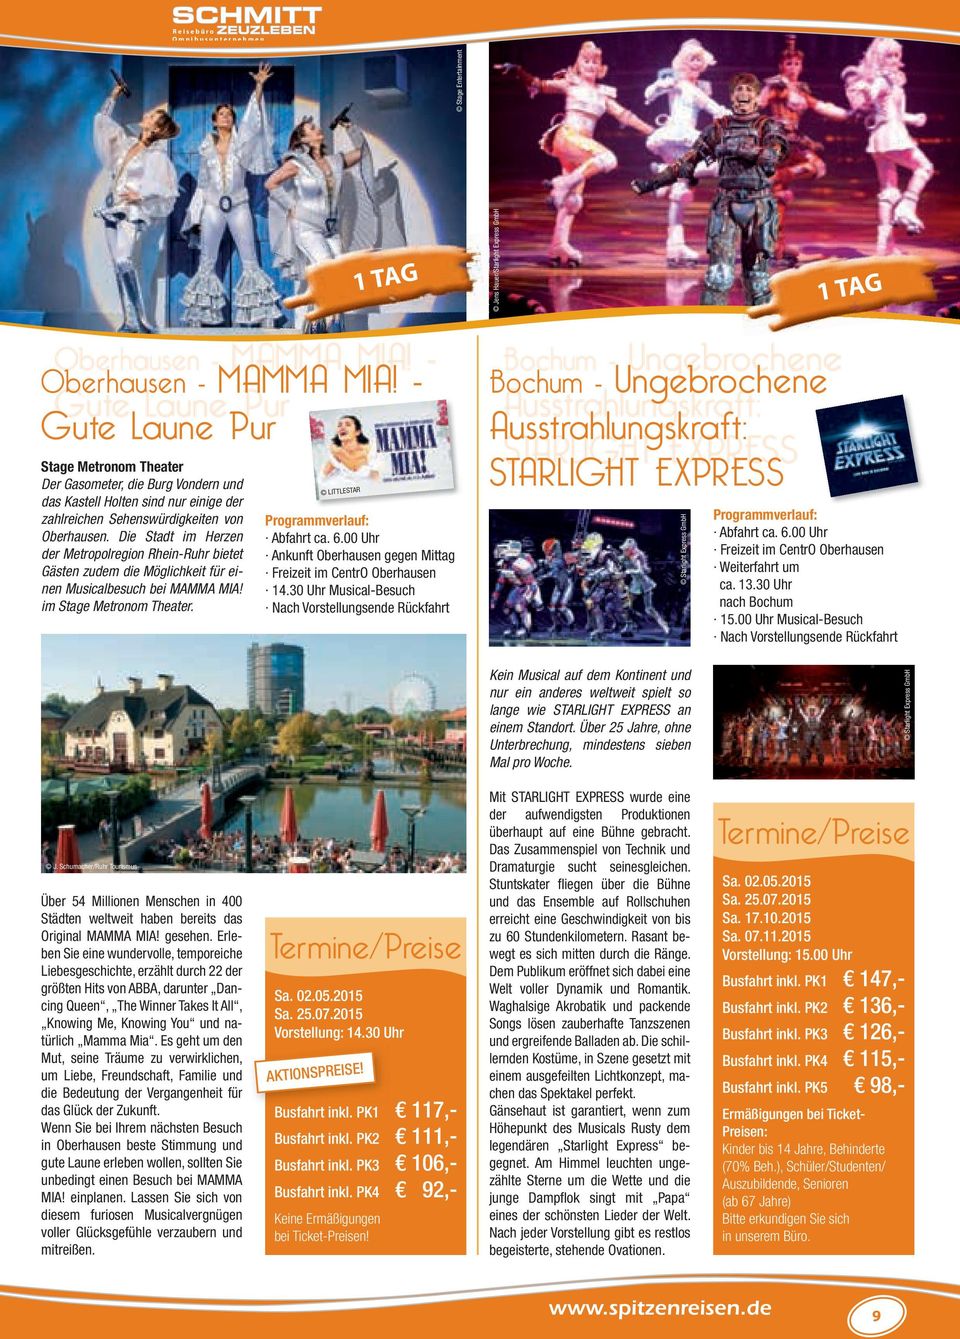 Die Stadt im Herzen der Metropolregion Rhein-Ruhr bietet Gäs ten zudem die Möglichkeit für einen Musicalbesuch bei MAMMA MIA! im Stage Metronom Theater. LITTLESTAR Programmverlauf: Abfahrt ca. 6.